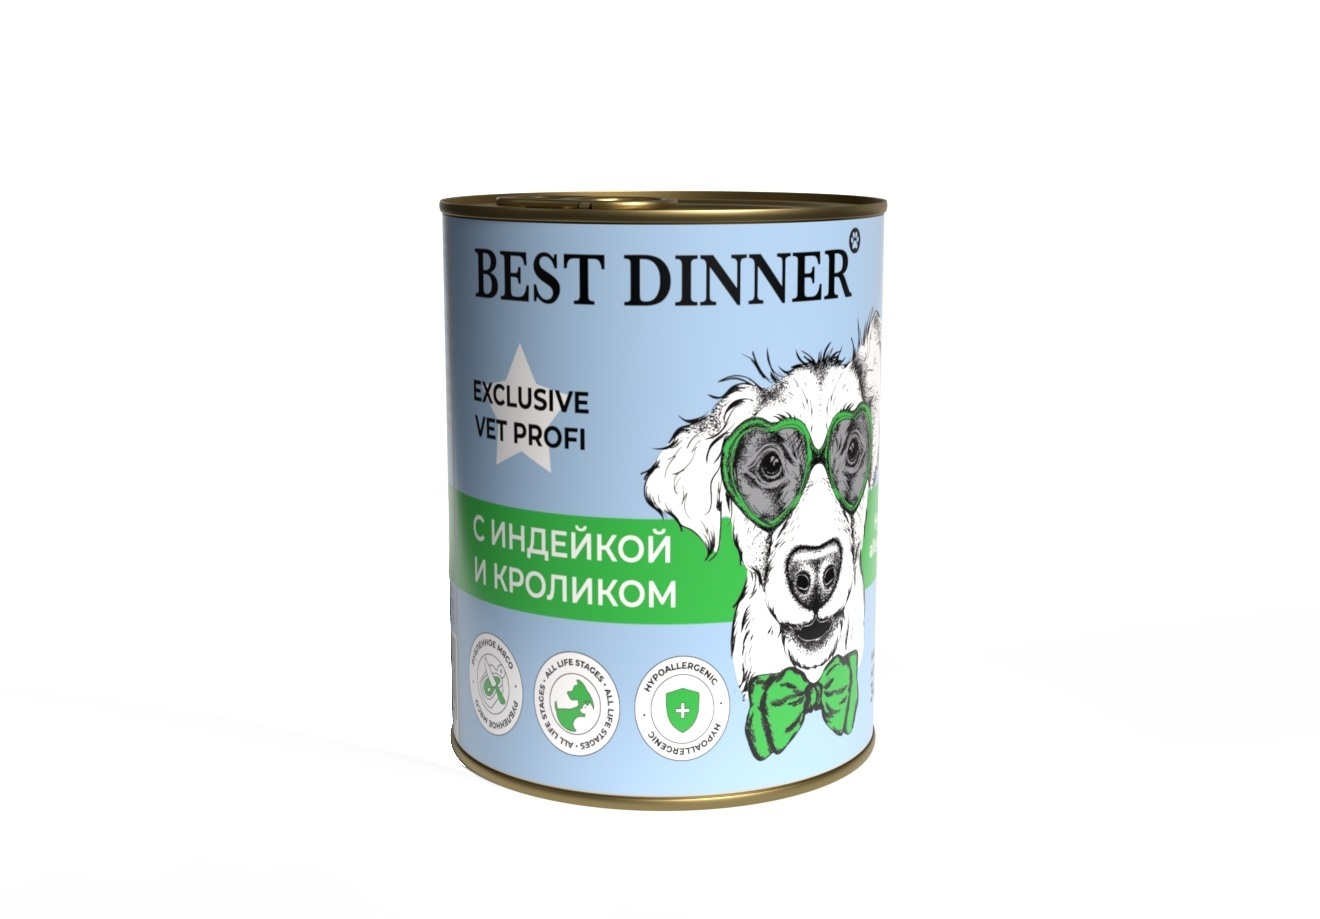 Best Dinner Best Dinner гипоаллергенные консервы Индейка и кролик, для собак всех пород (340 г) 42015